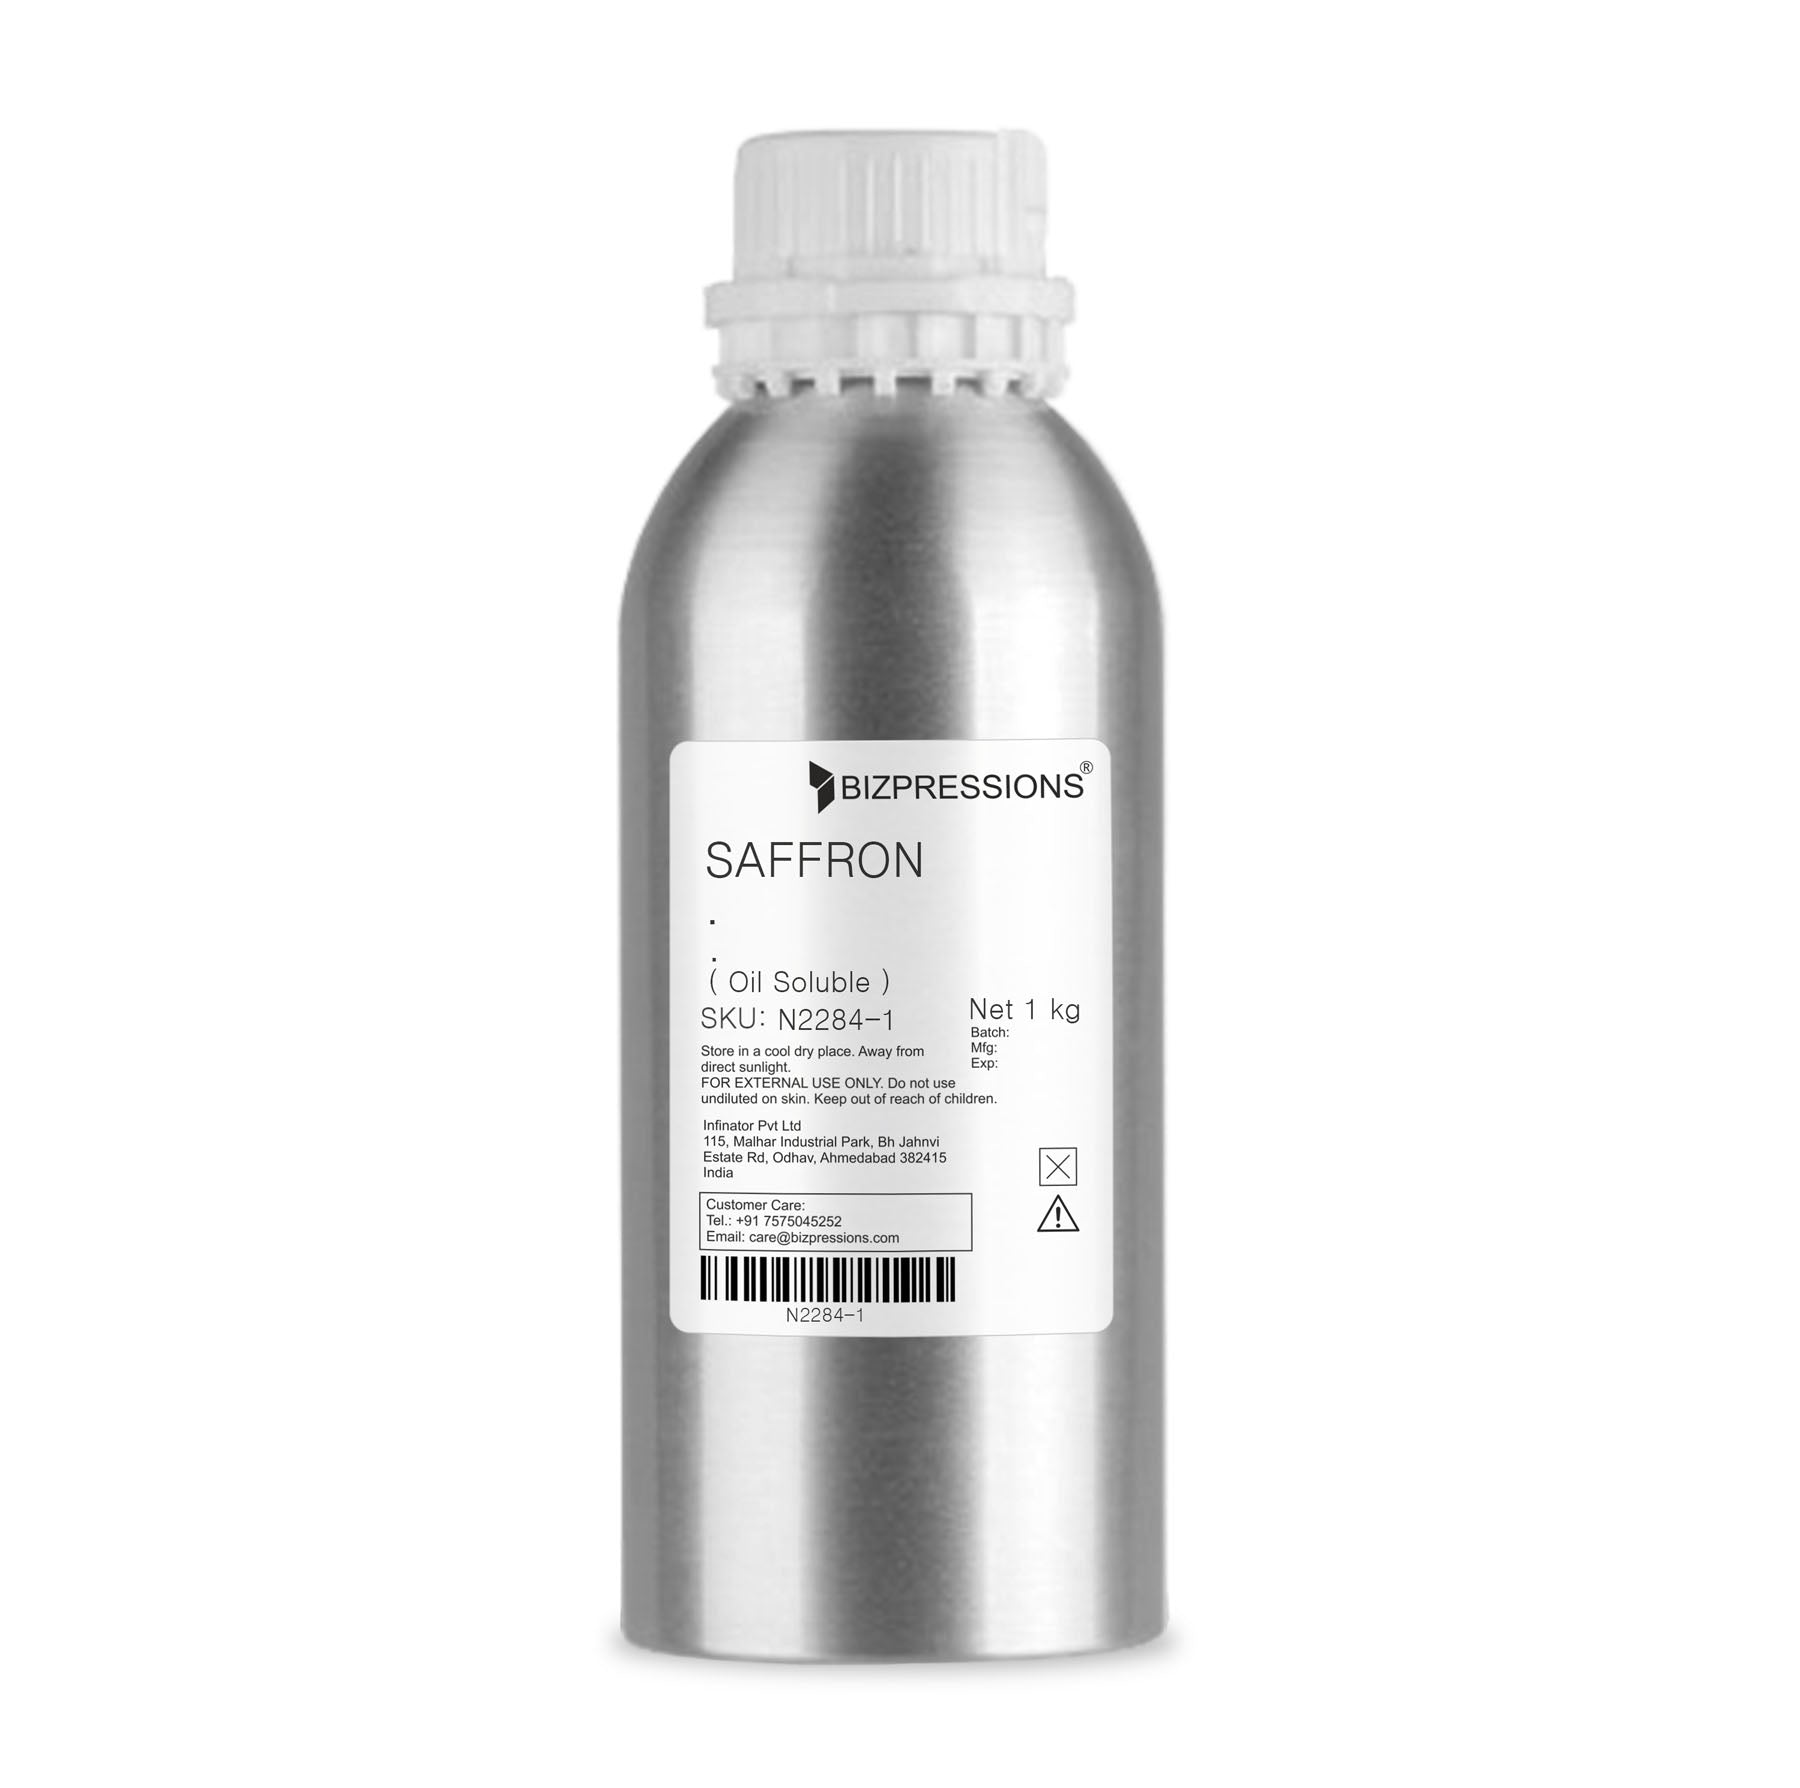 SAFFRON - Fragrance ( Oil Soluble ) - 1 kg